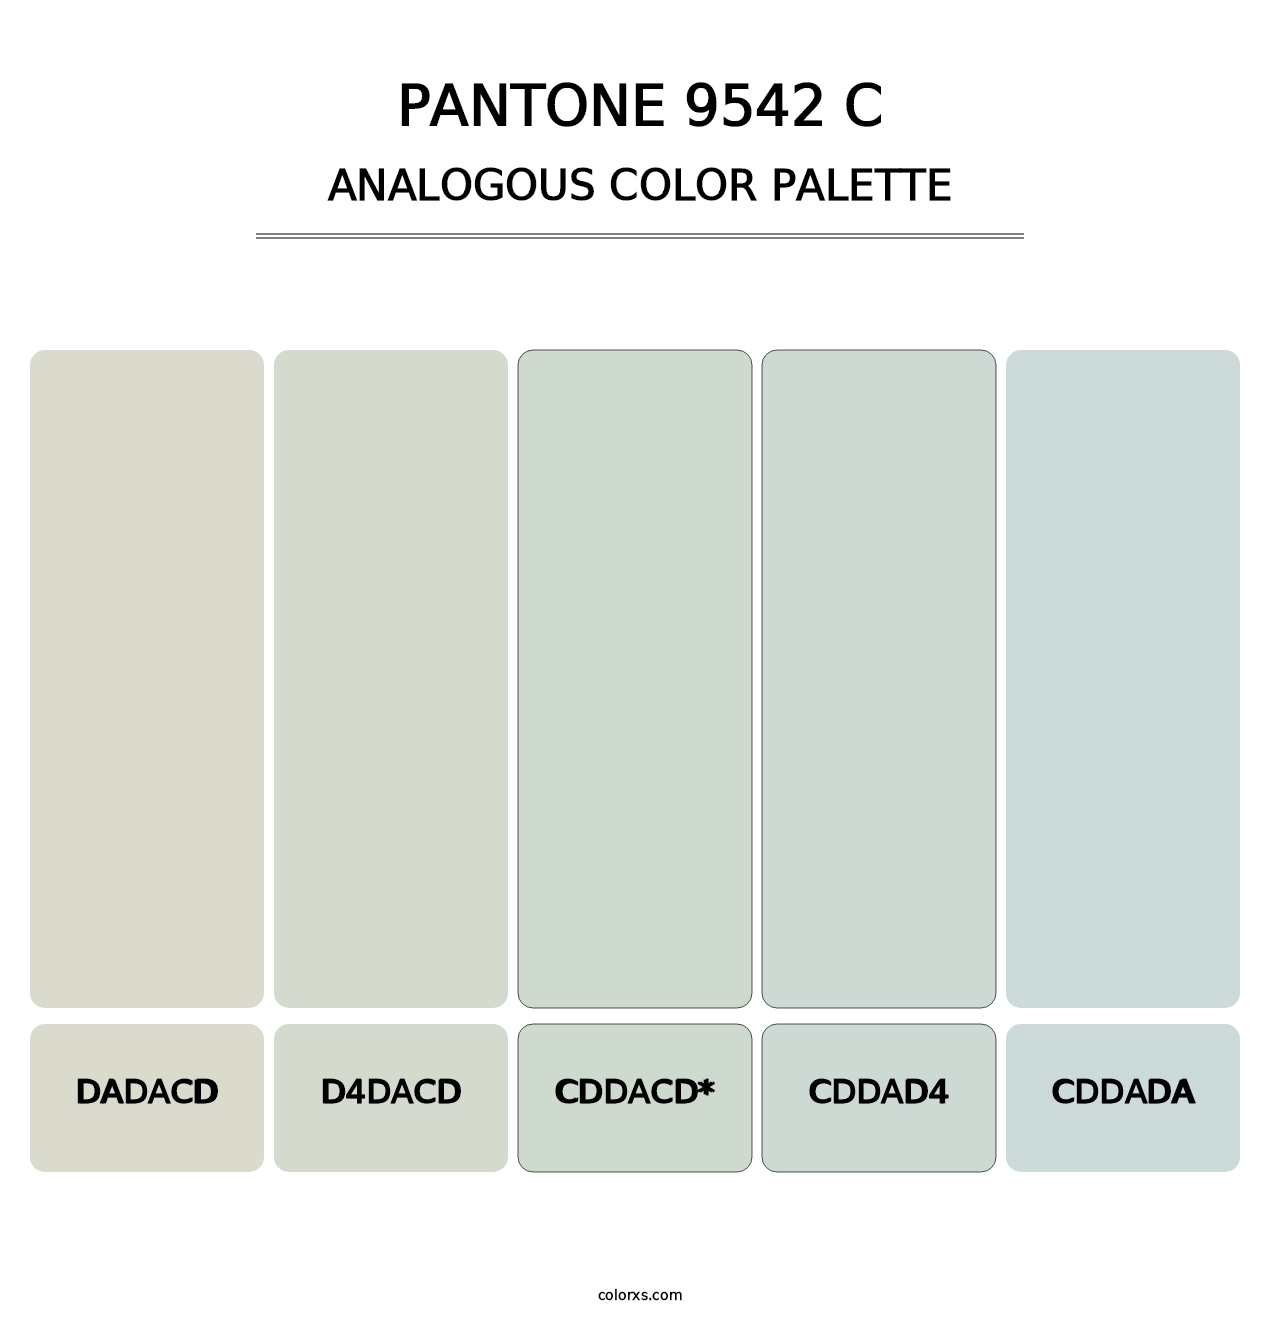 PANTONE 9542 C - Analogous Color Palette